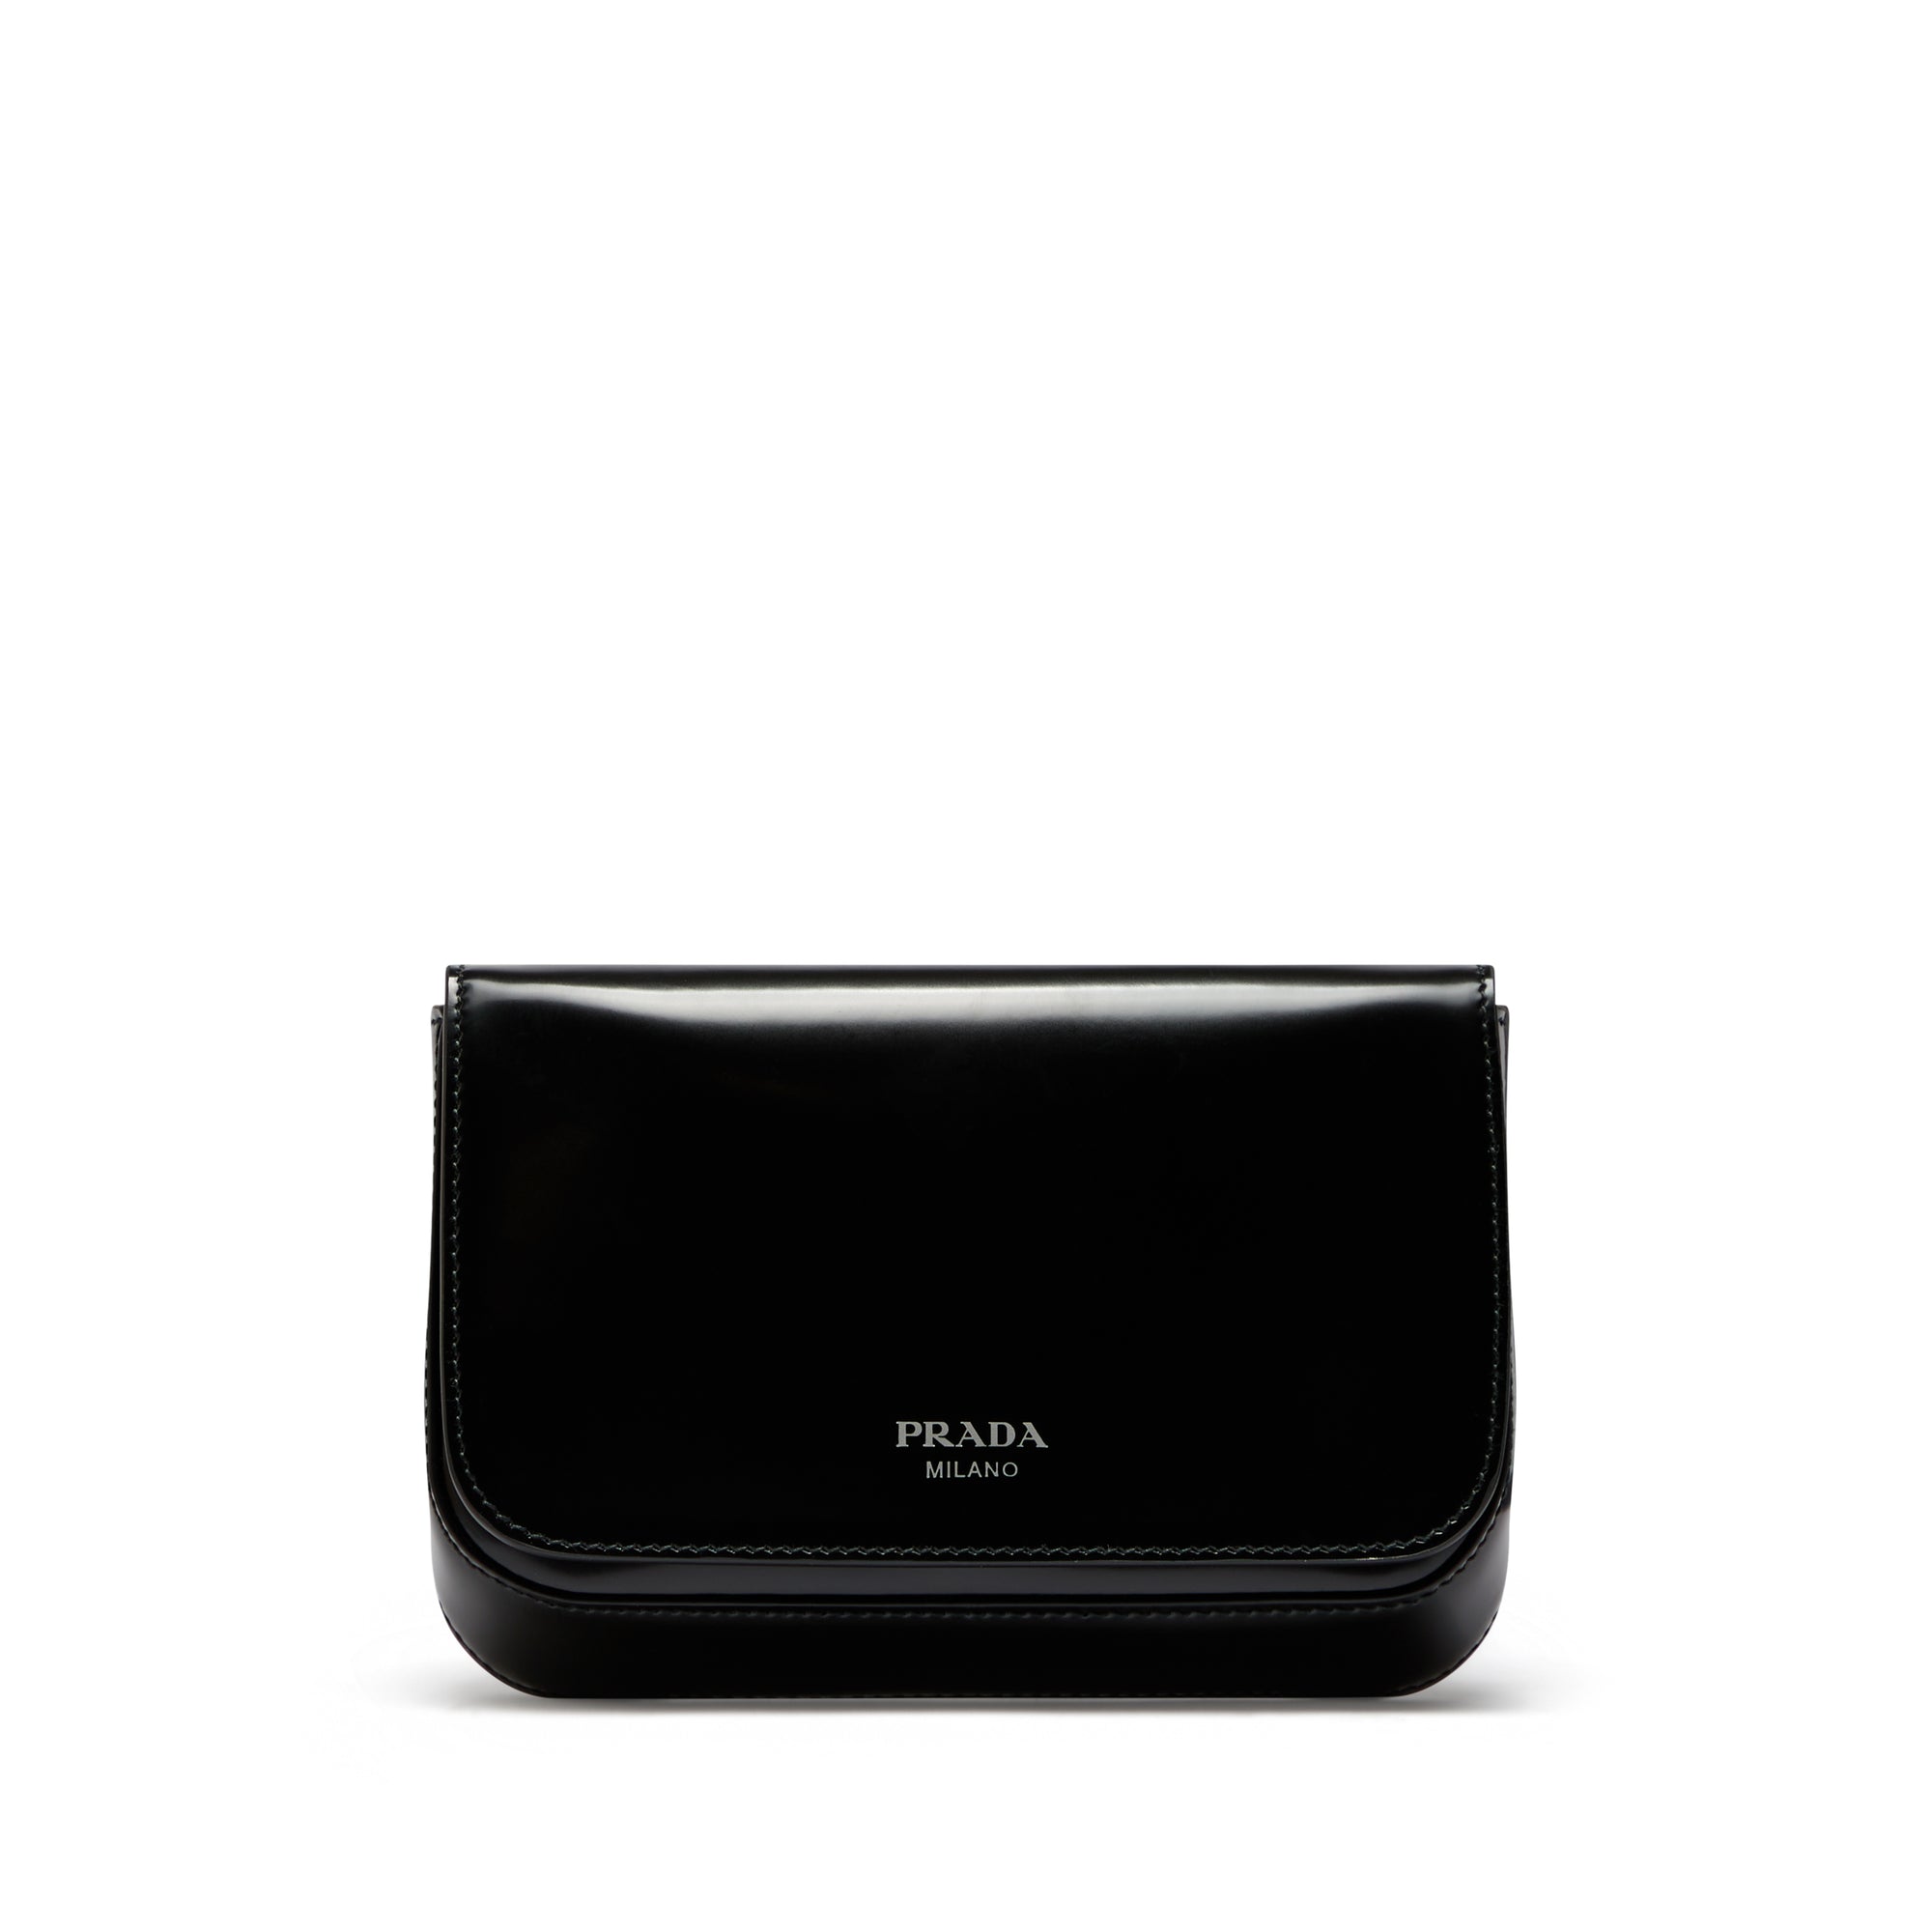 Prada - Men’s Brushed Leather Mini Bag - (Black) view 1